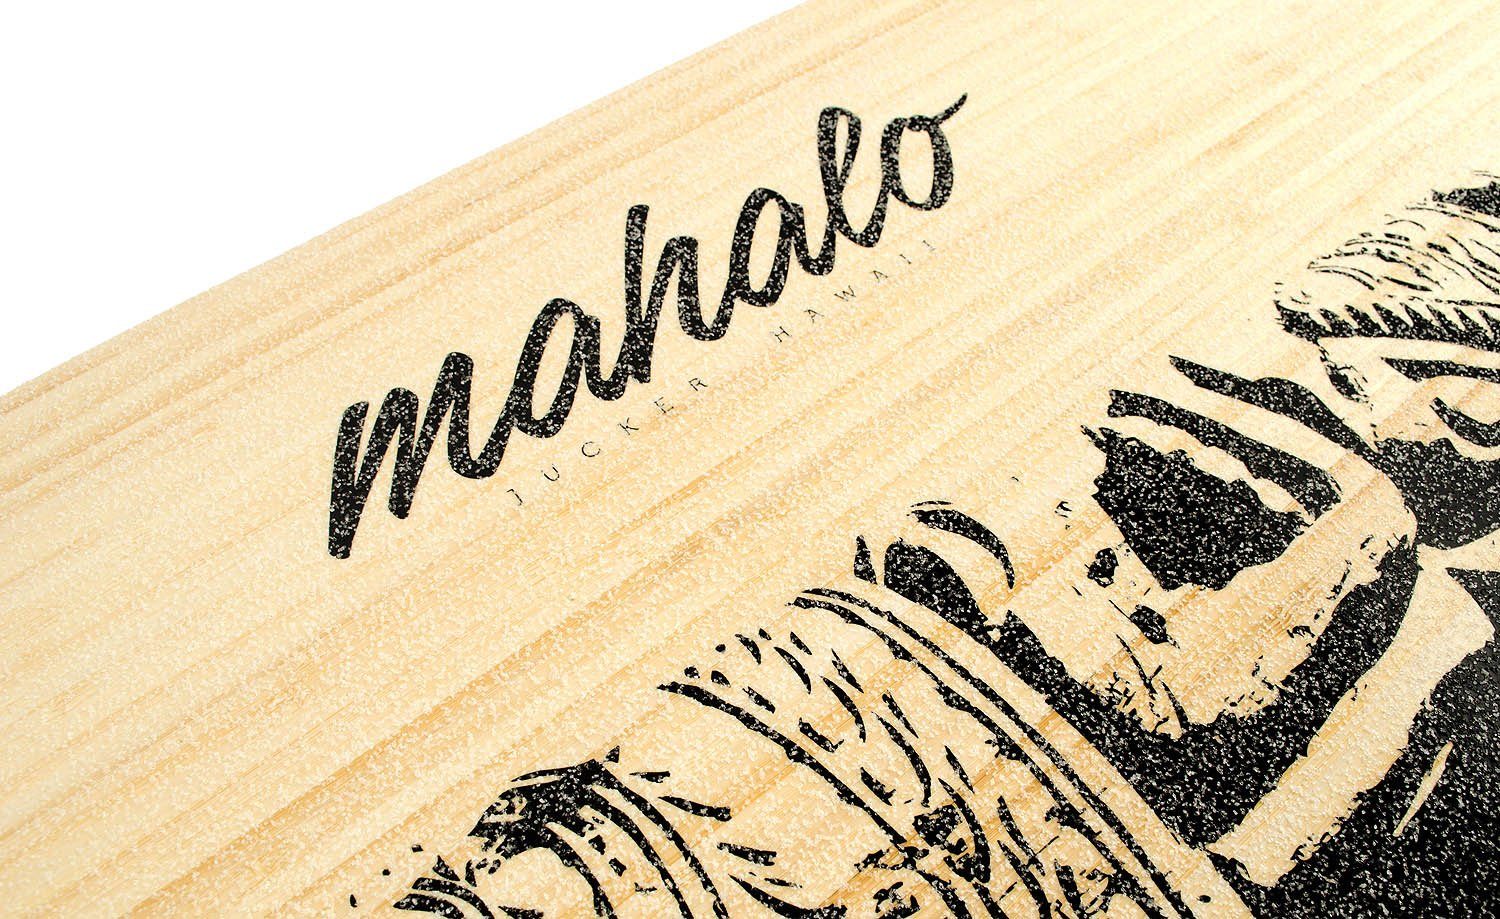 JUCKER HAWAII Balanceboard AKA inkl. Set Board Hawaiianisches Makaha - Einzigartiges Balance Design Bambus Korkrolle